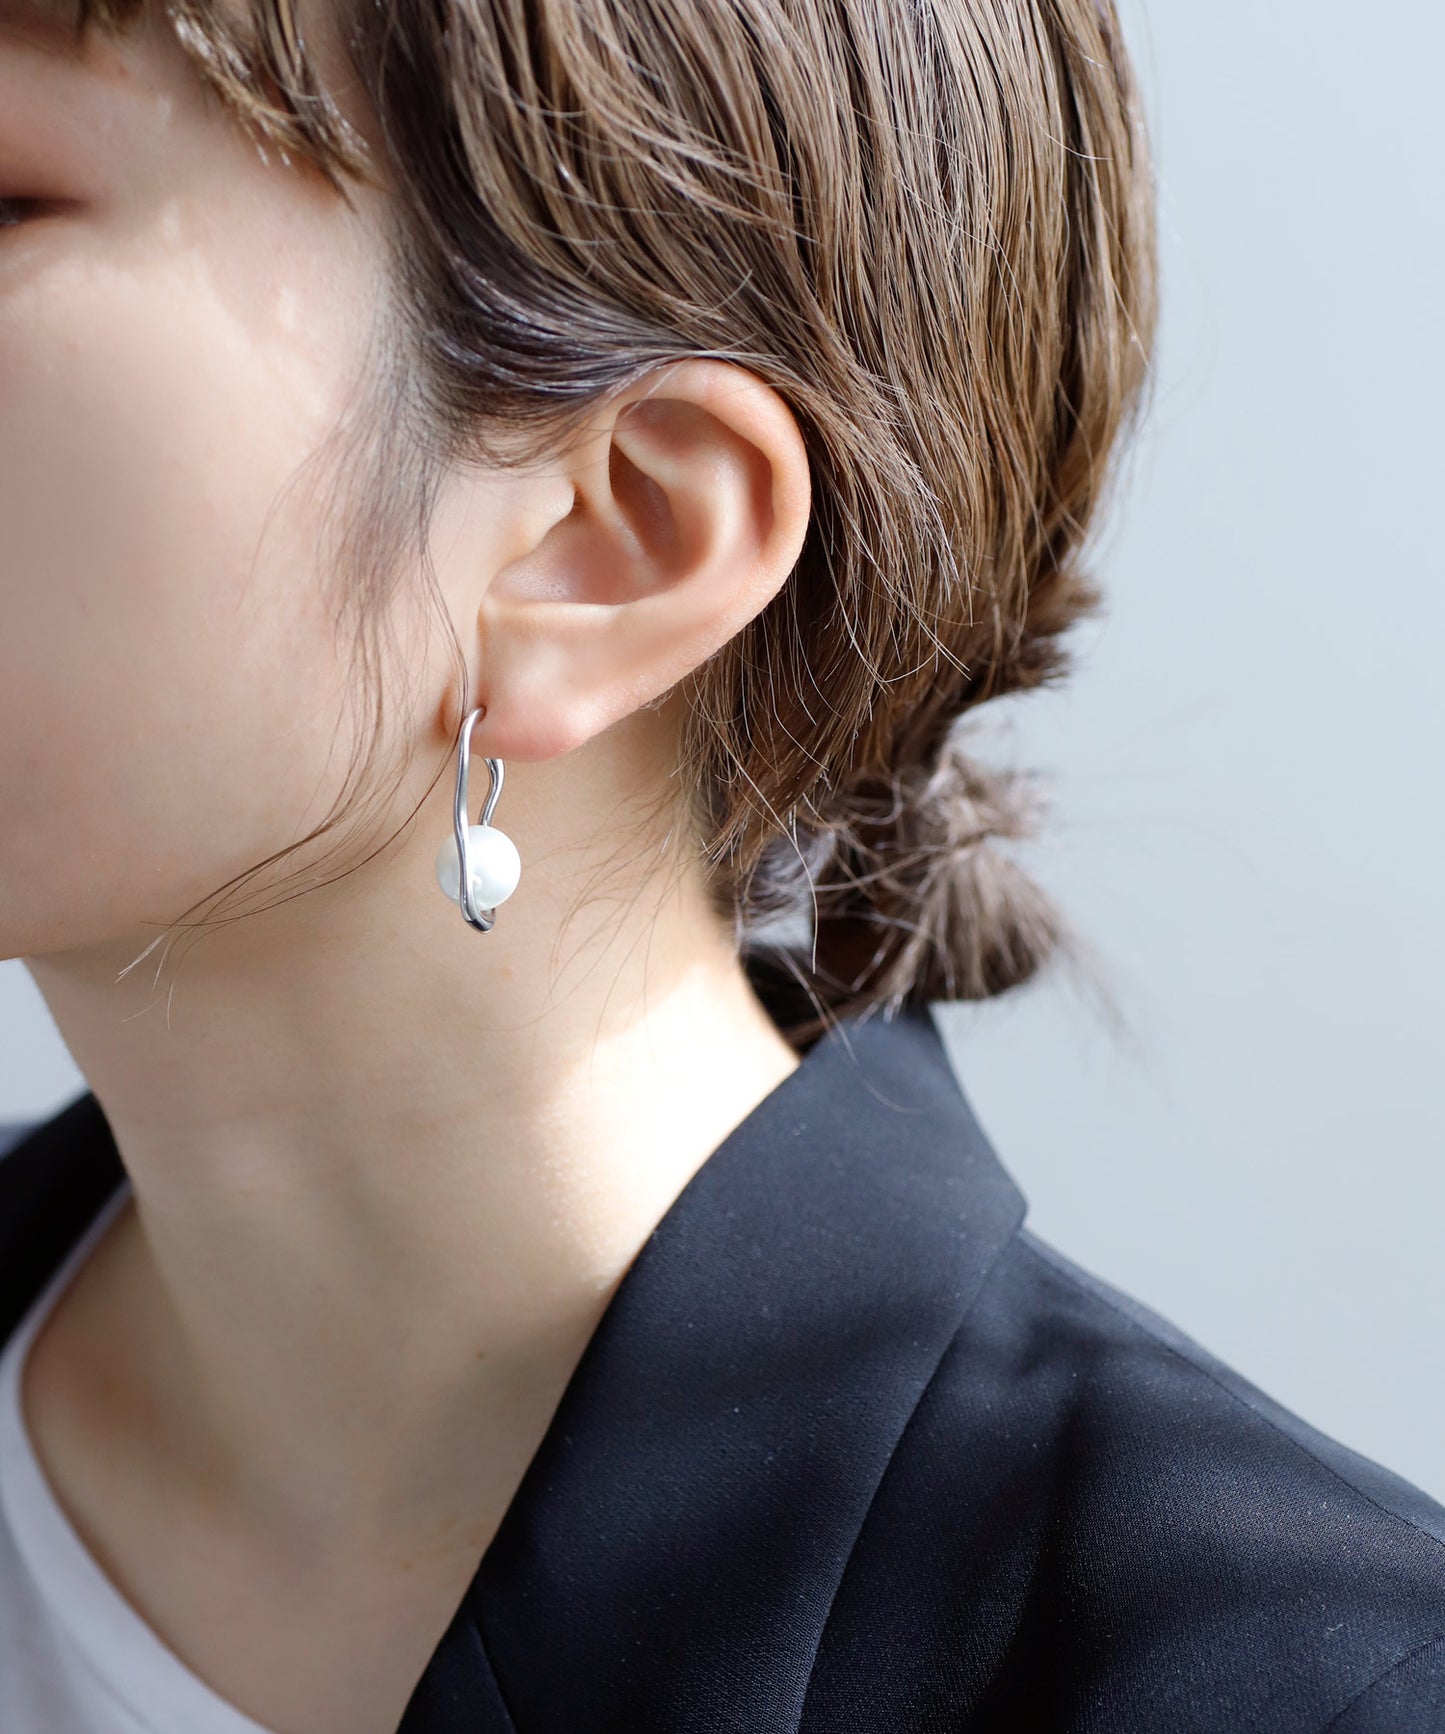 【Stainless Steel IP】 Pearl Nuance Earrings